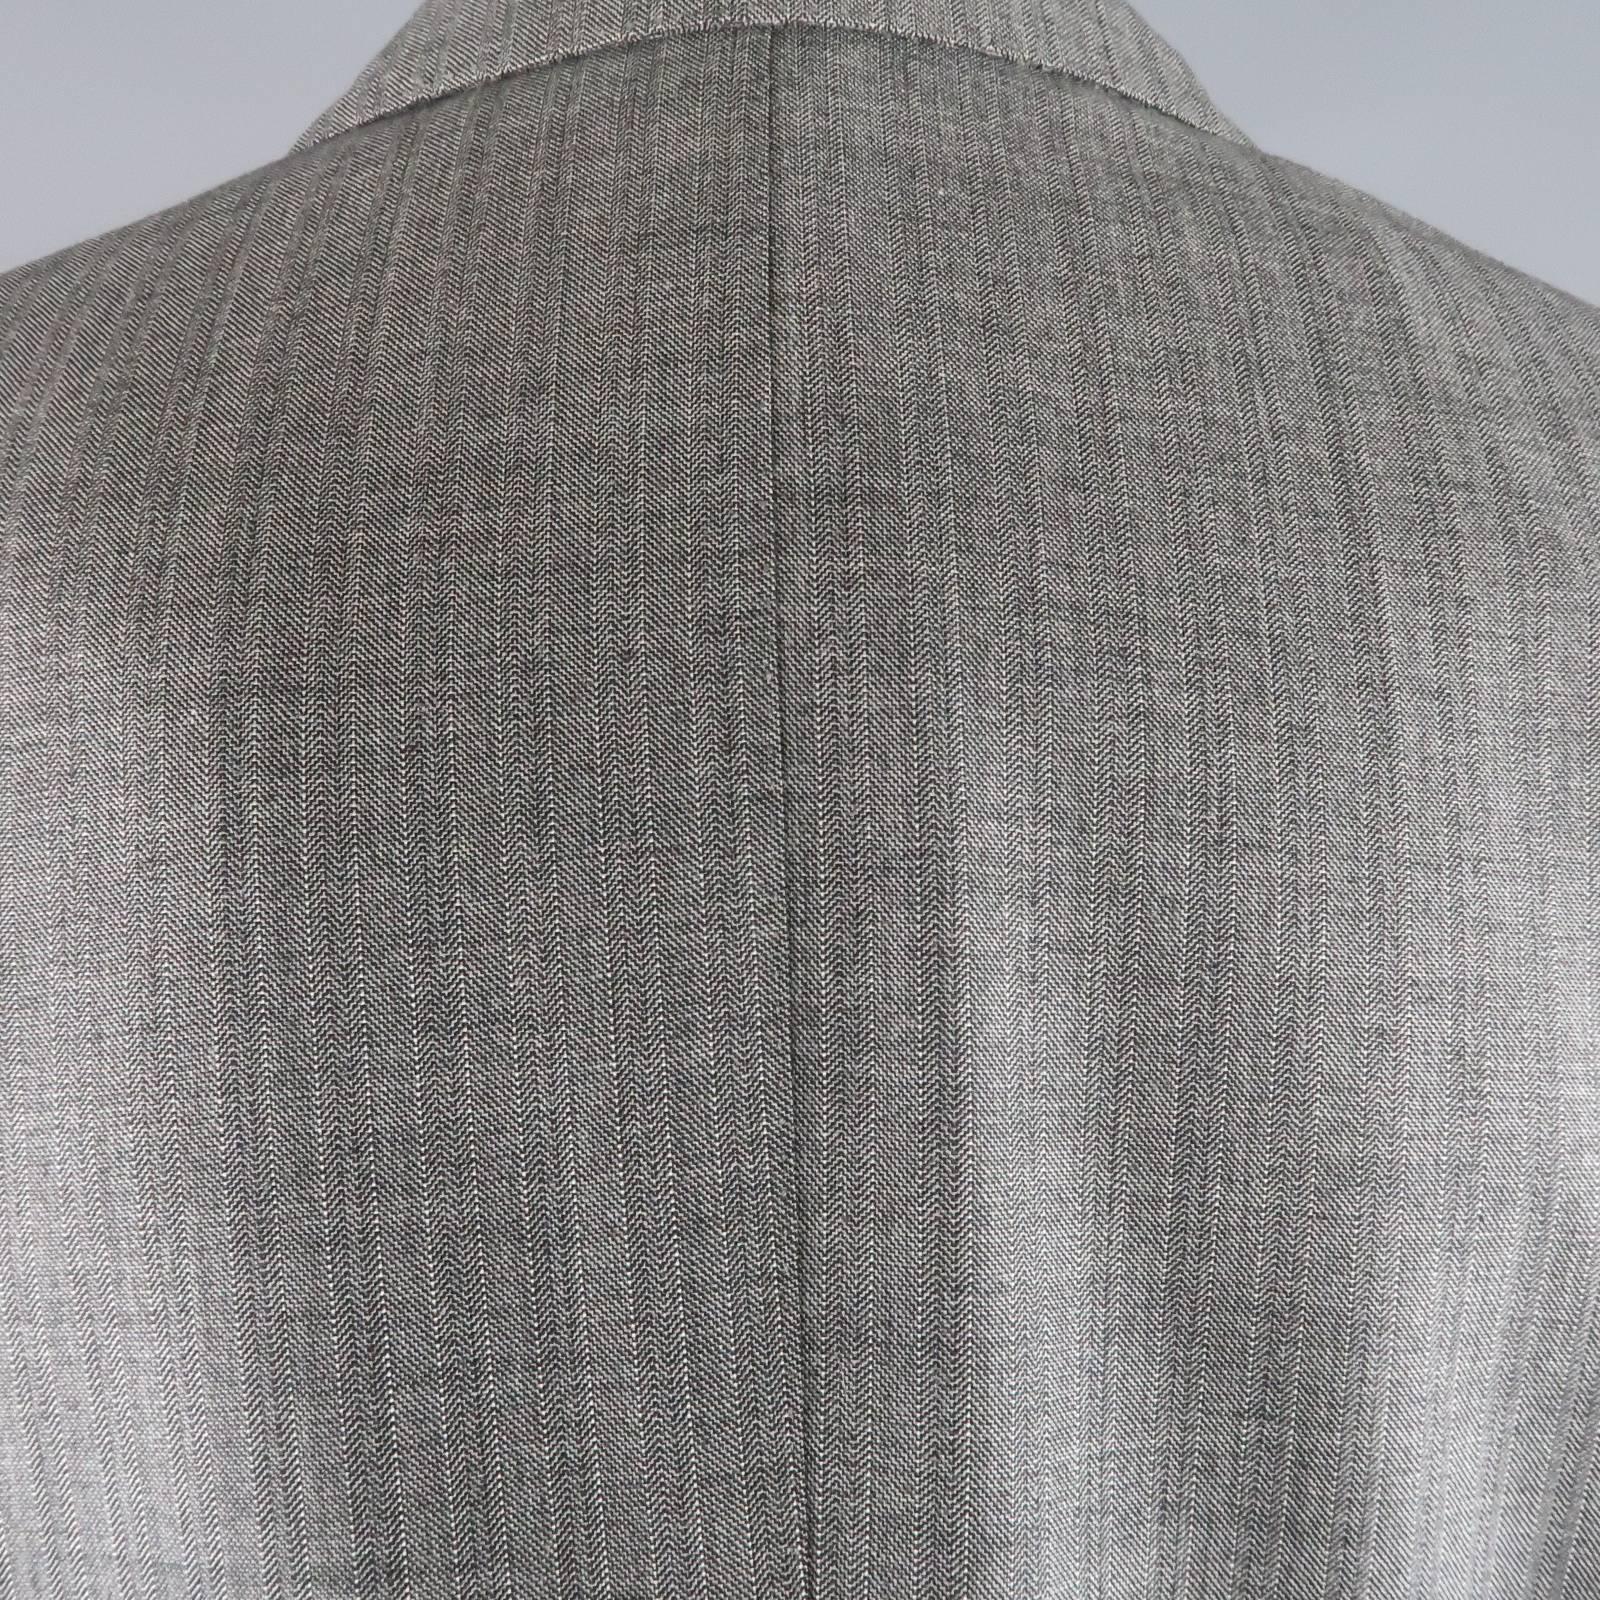 Gray Tom Ford Suit - Men's Grey Herringbone Wool Peak Lapel Jacket & Pants